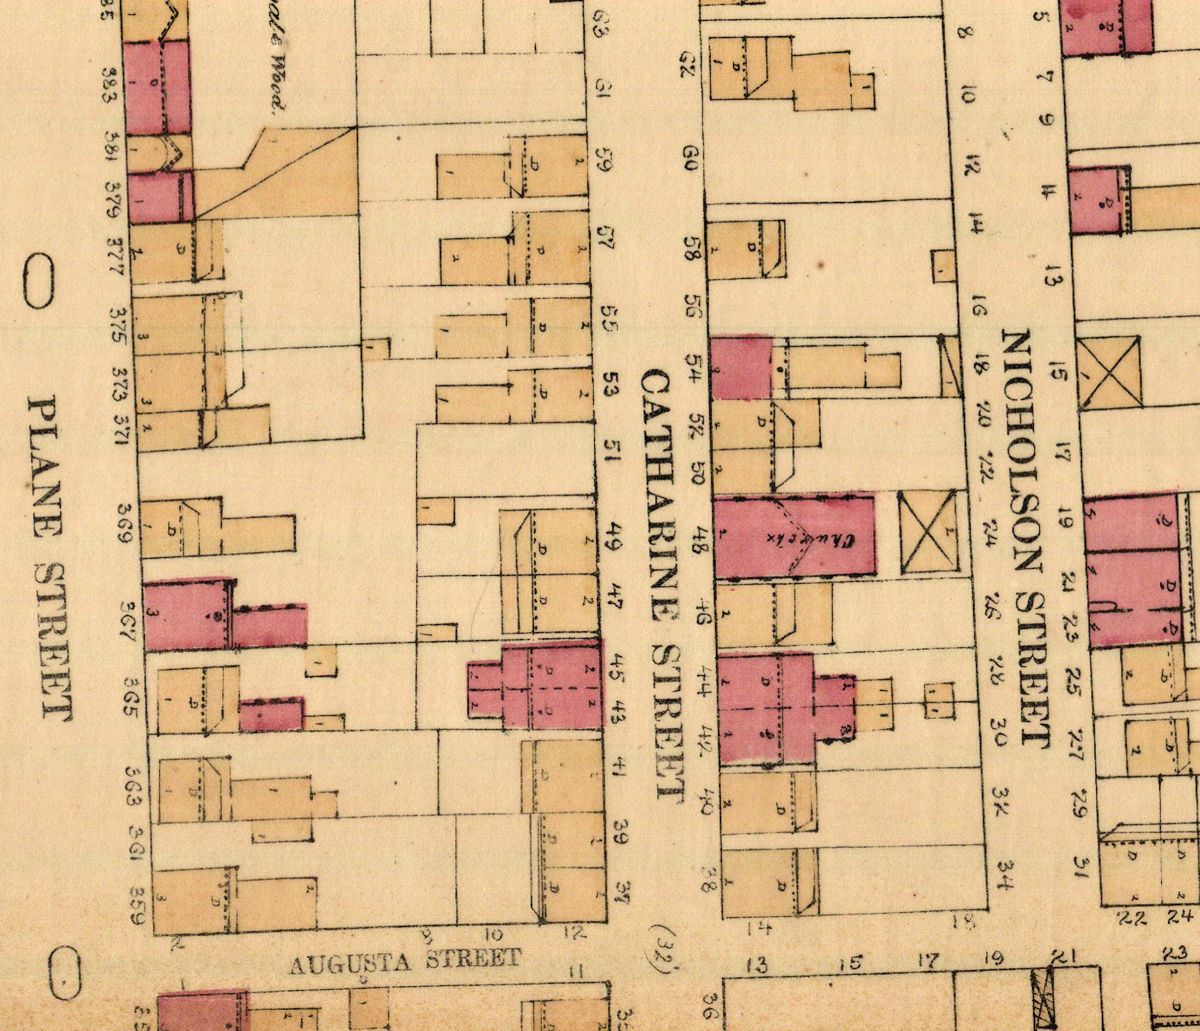 1868 Map
